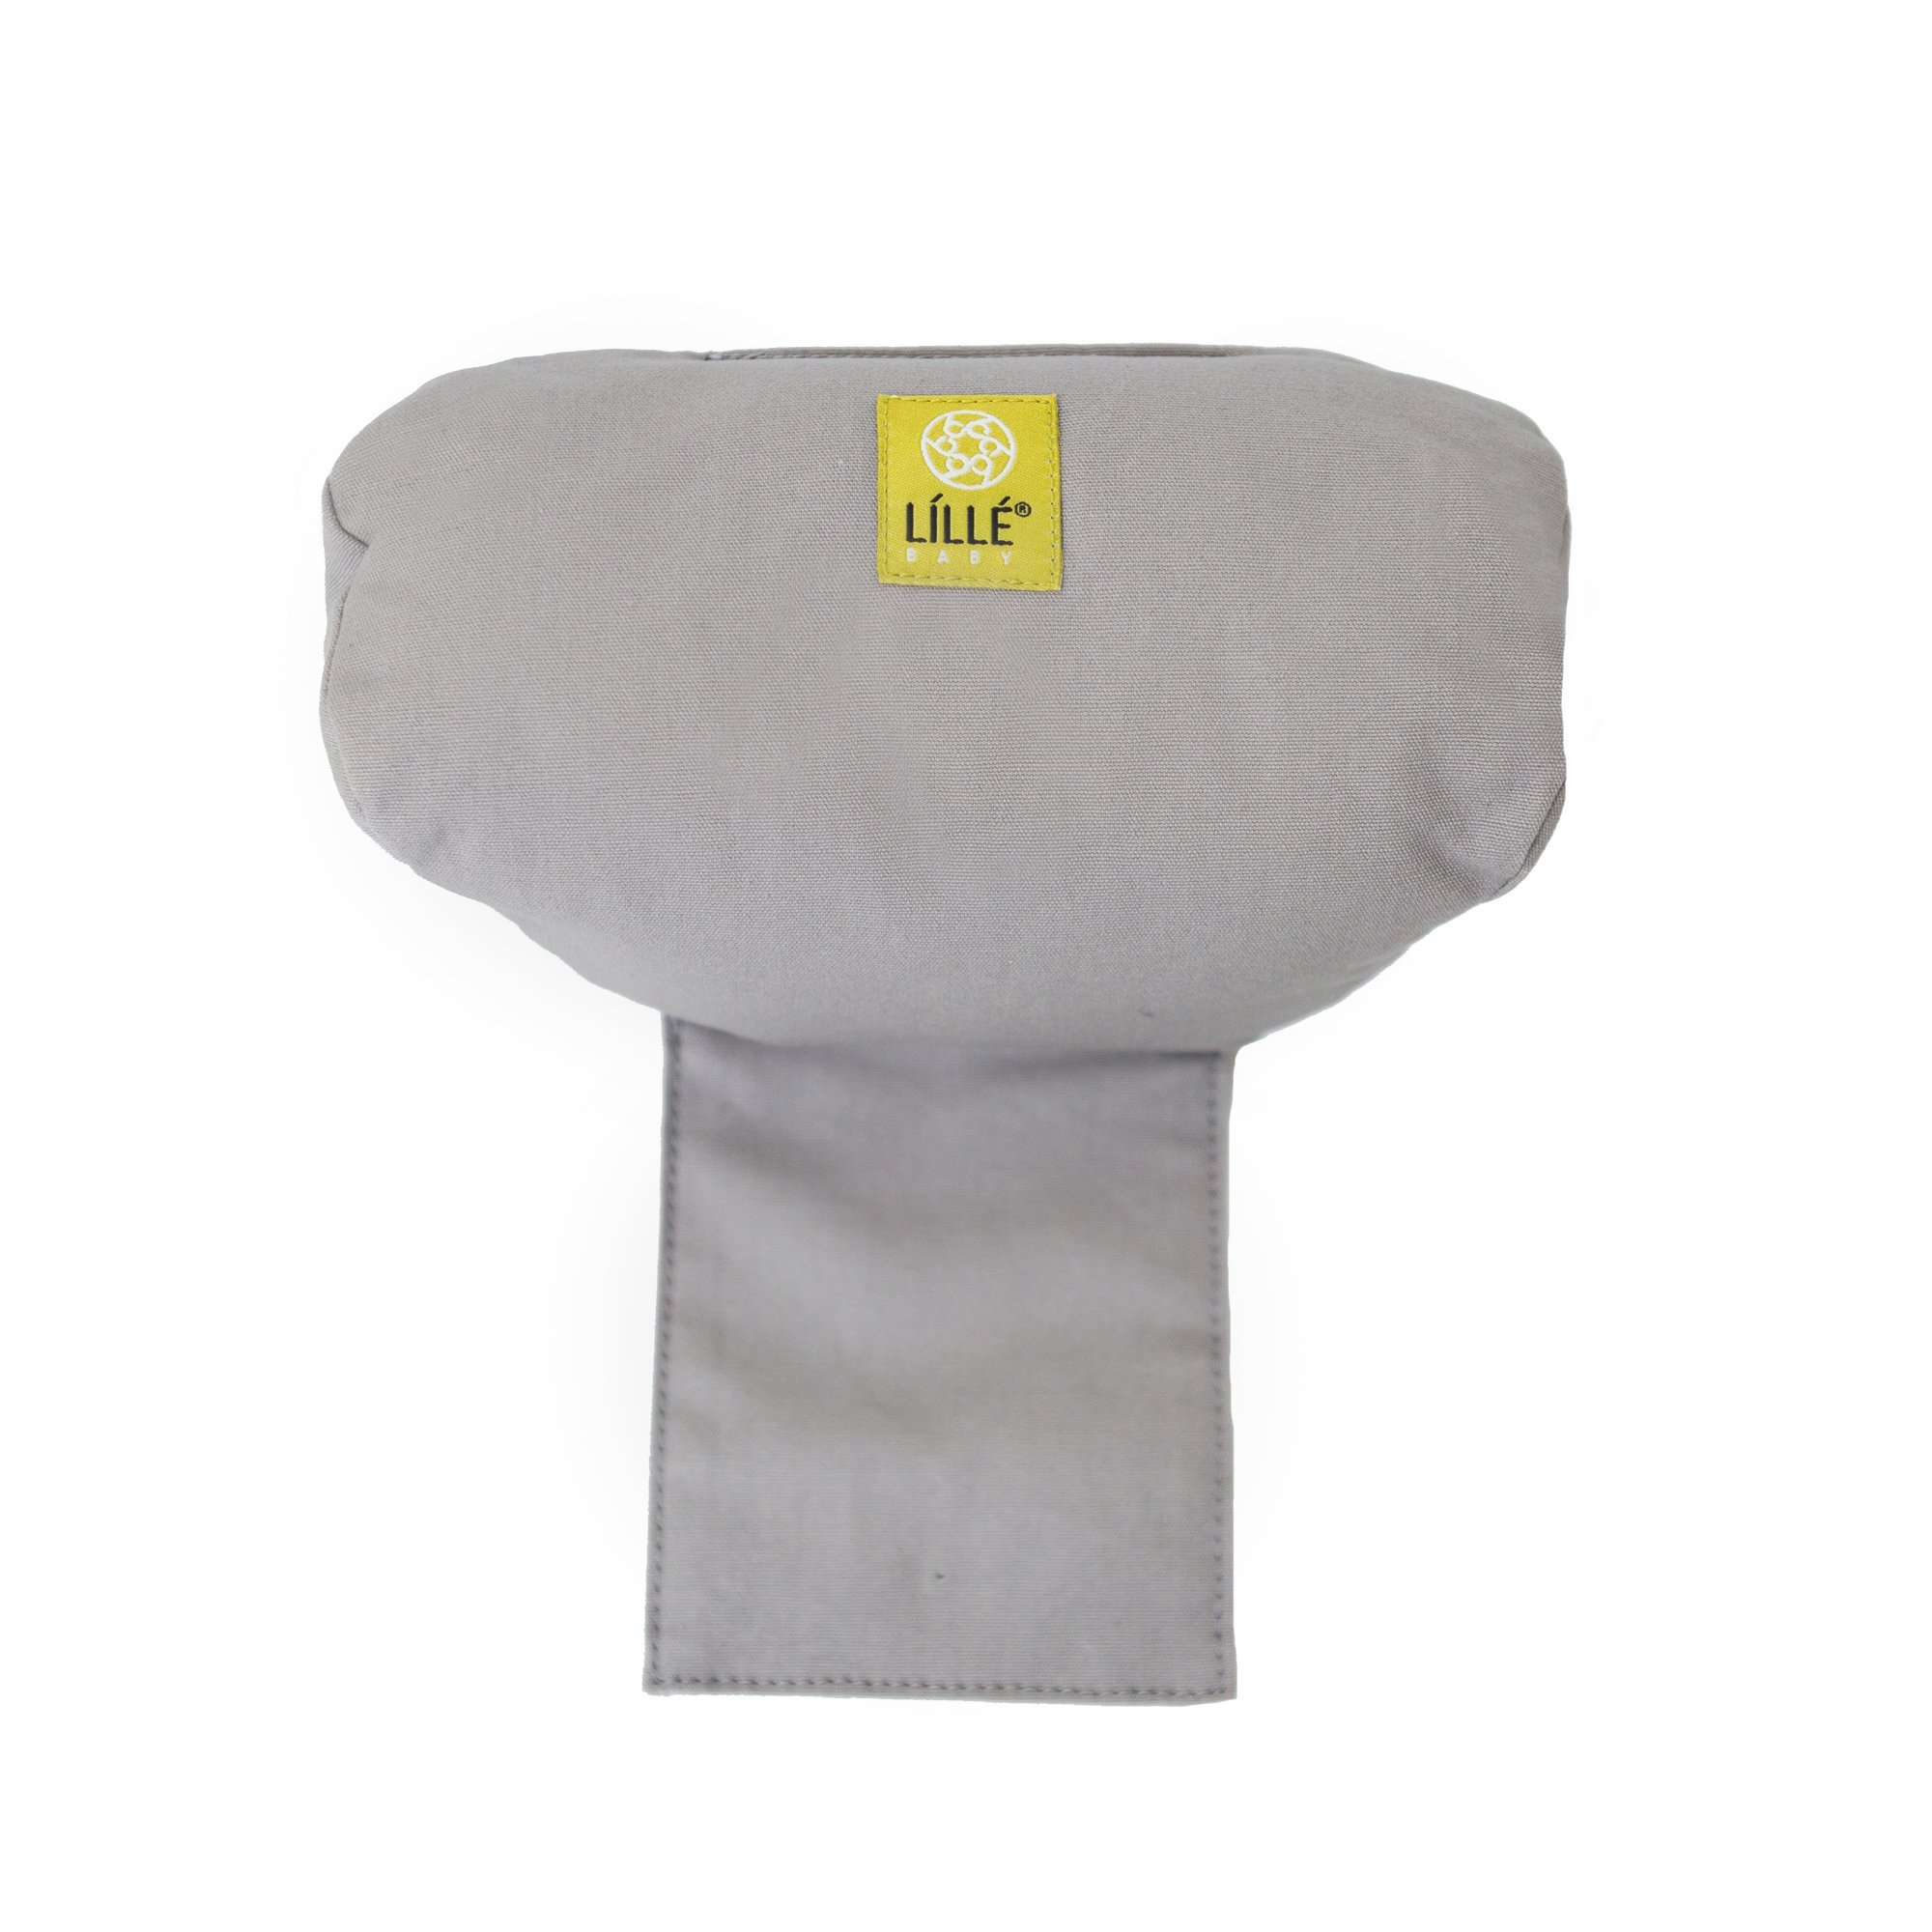 LÍLLÉbaby Ergonomic Washable Infant Pillow for Baby Carrier, Grey